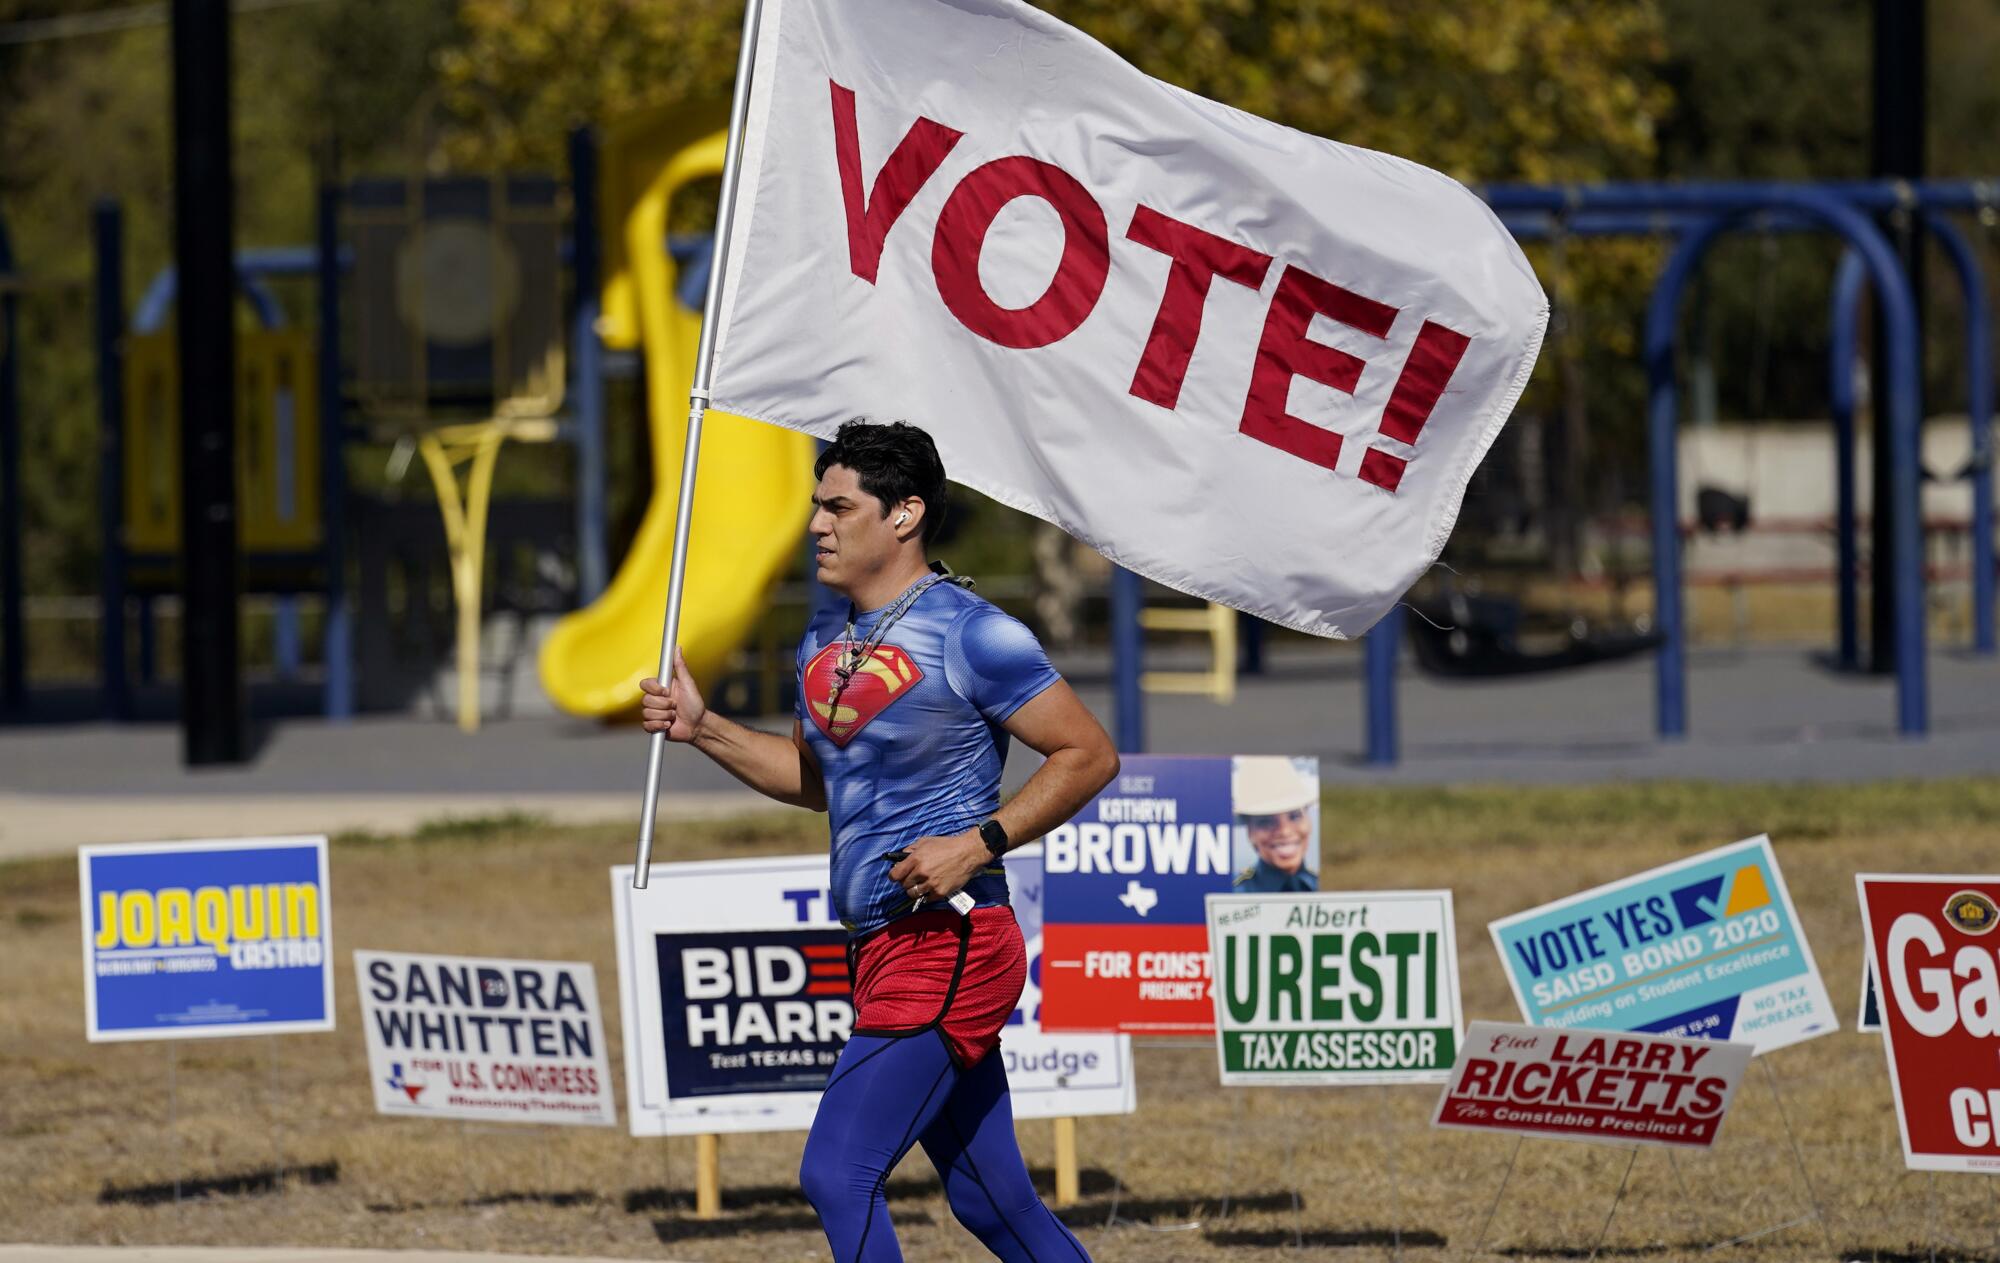 Al pasar por una casilla electoral en San Antonio, un corredor lleva una bandera para animar a la gente a votar.